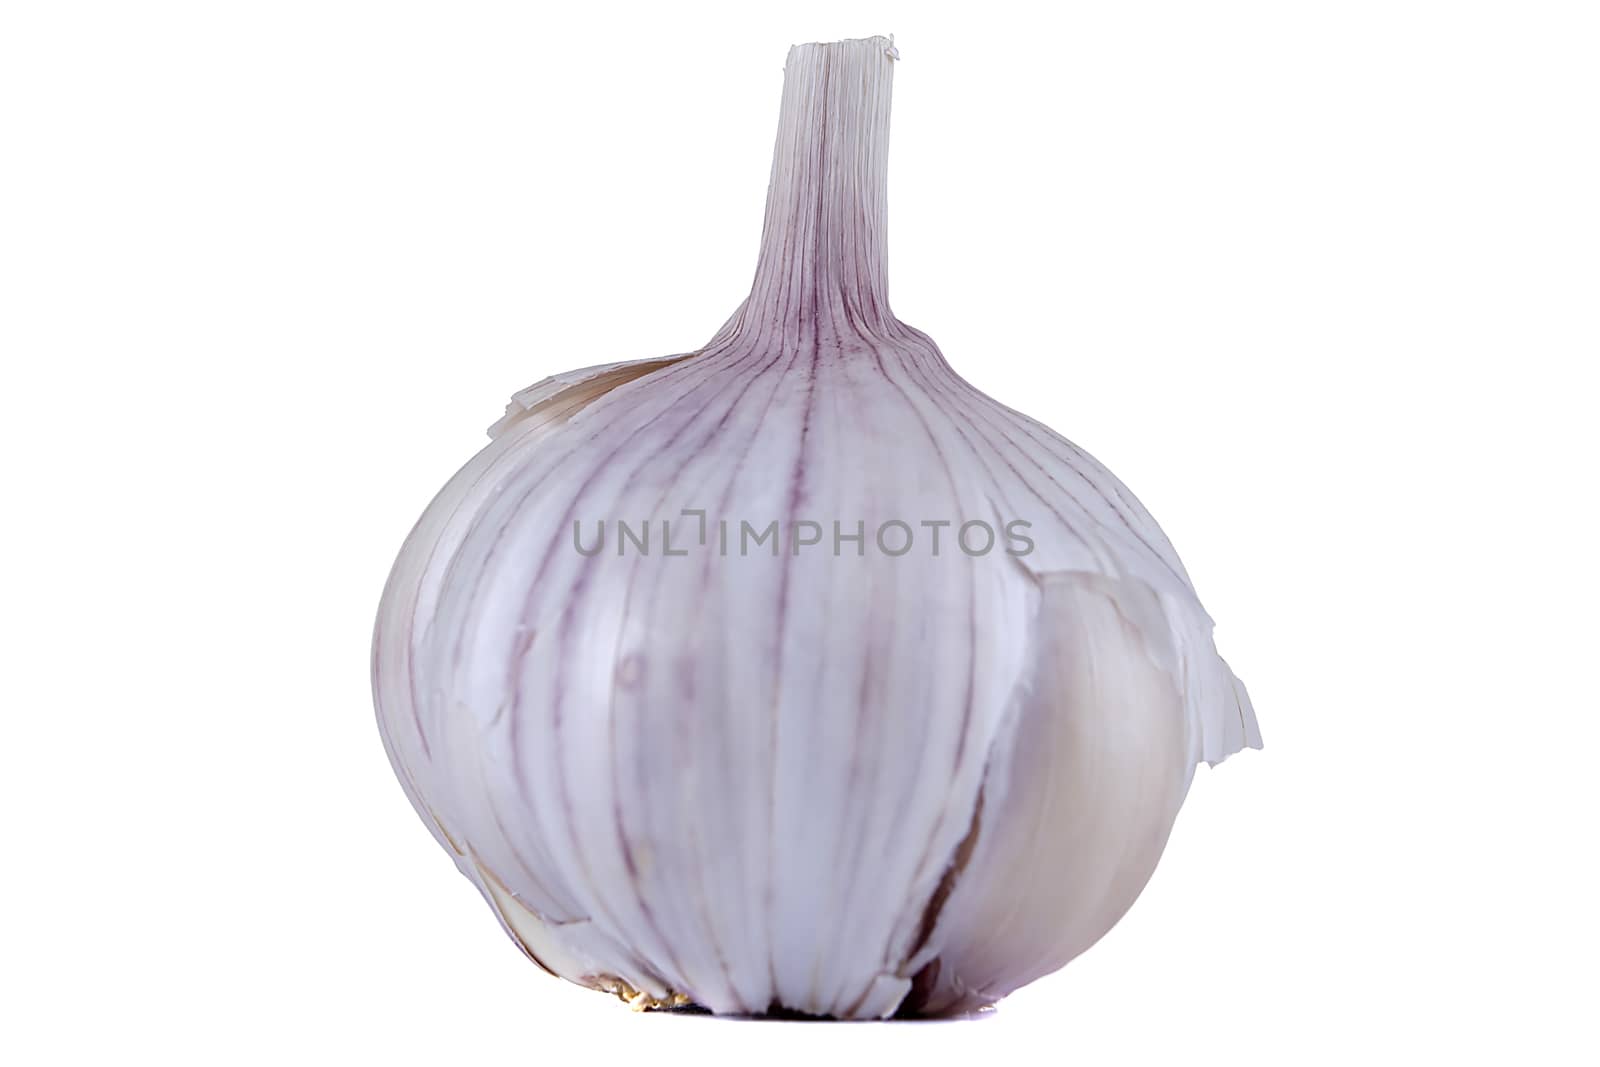 Ripe fresh garlic on white isolated background